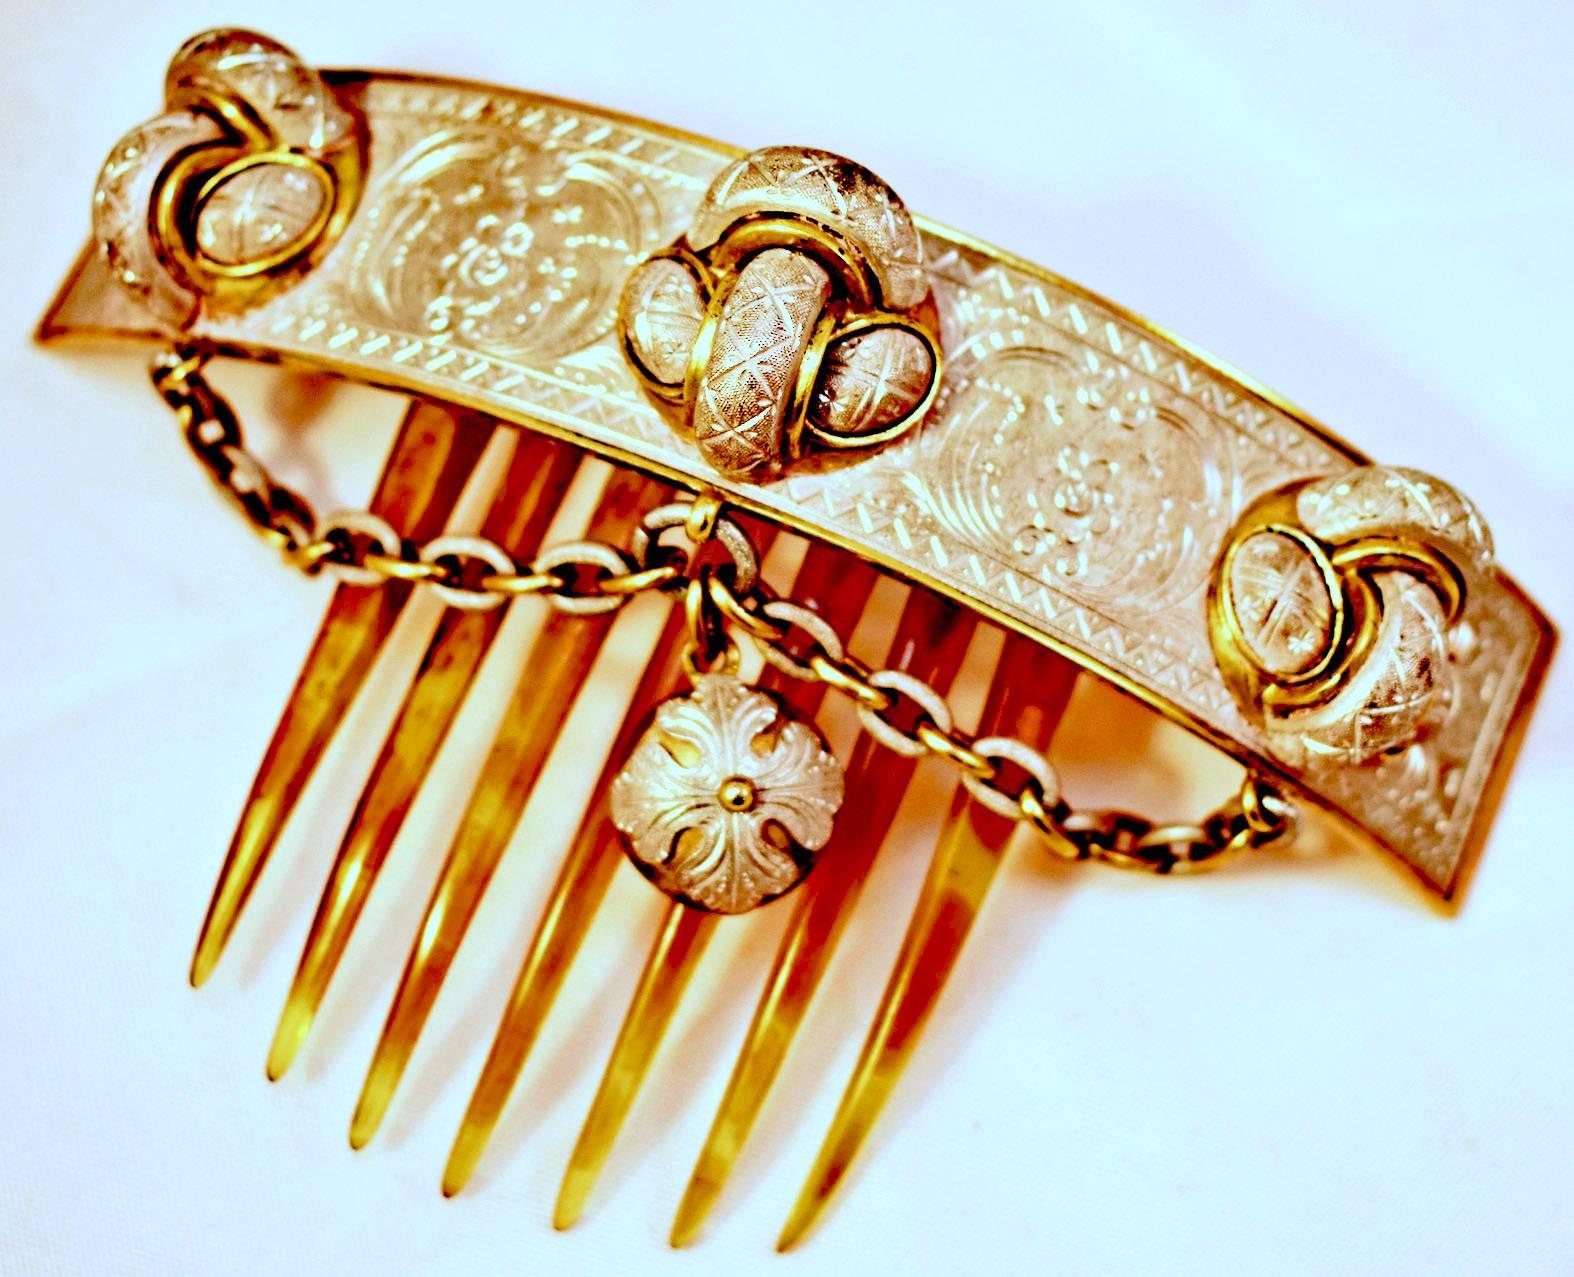 ancient comb